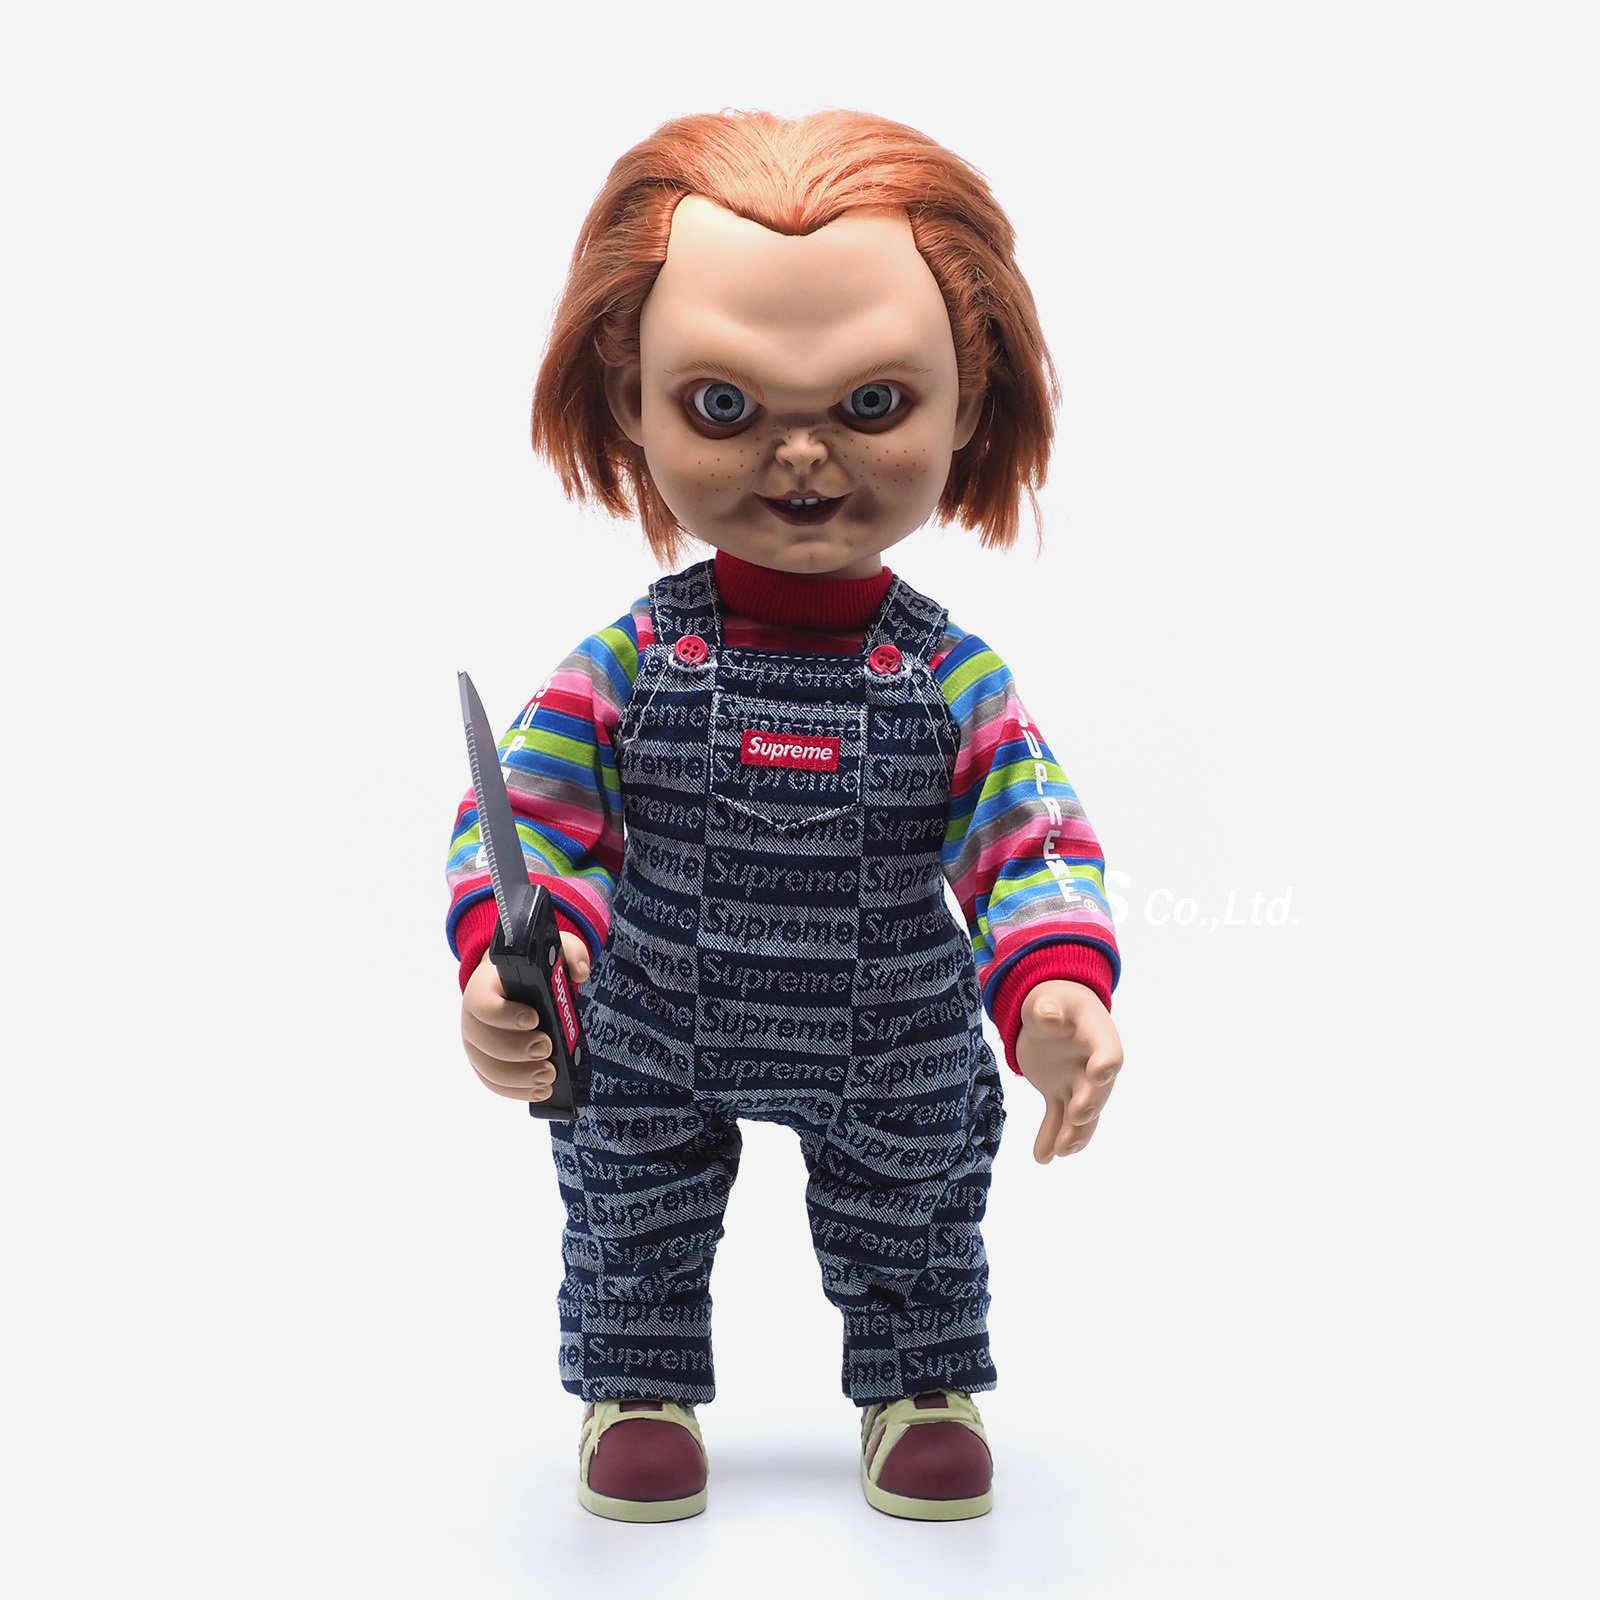 Supreme Chucky Doll Ug Shaft